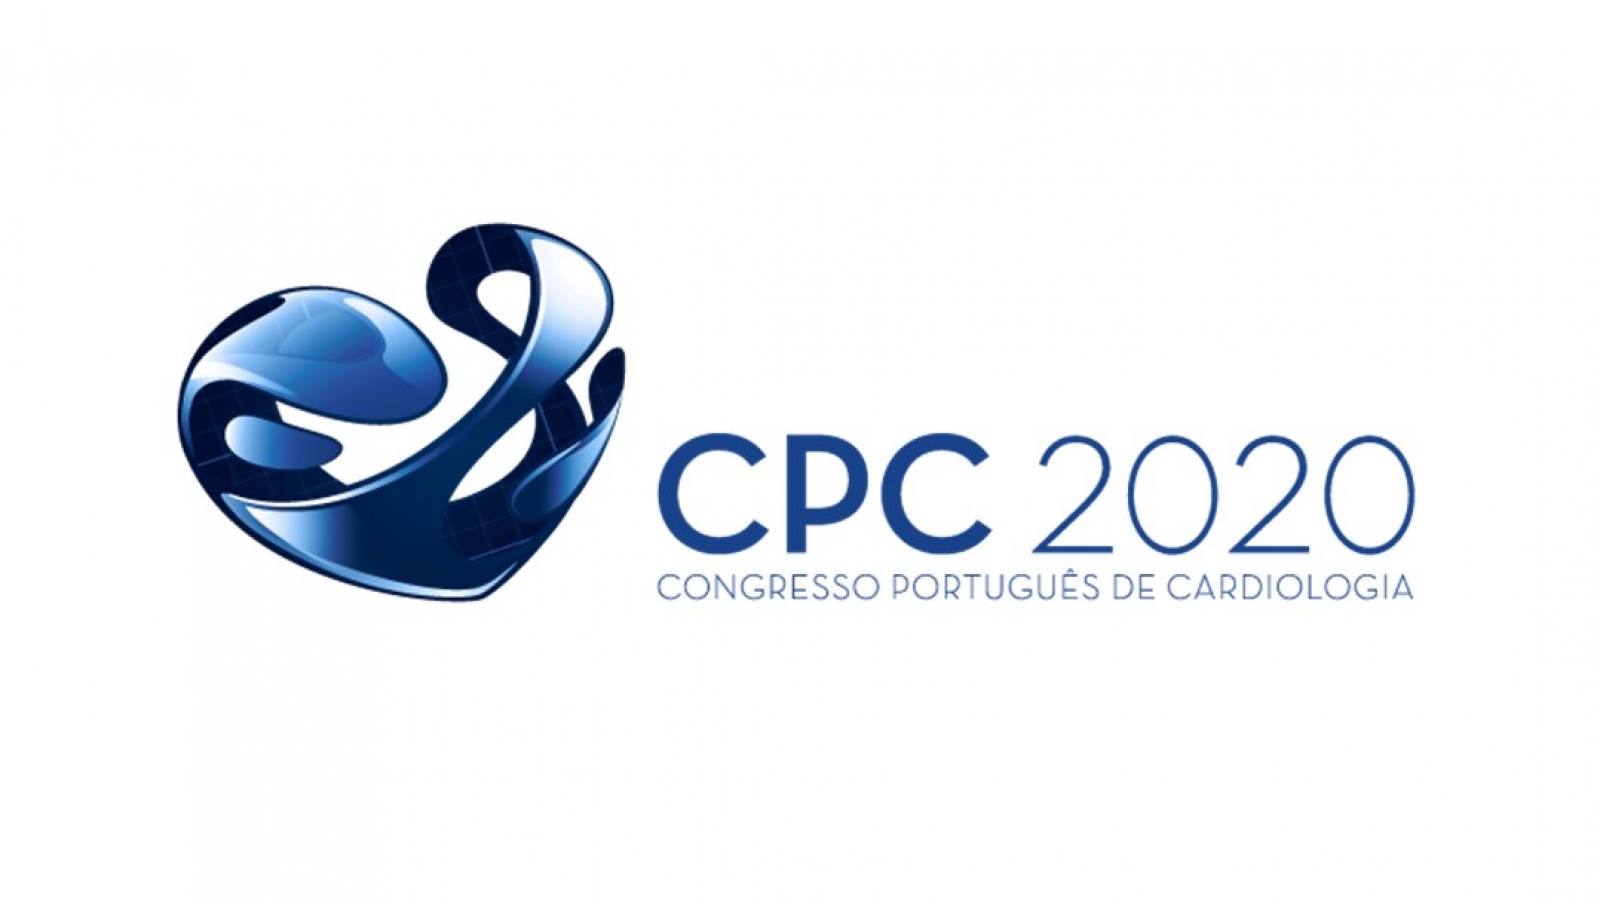 Divulgada nova data do Congresso Português de Cardiologia 2020